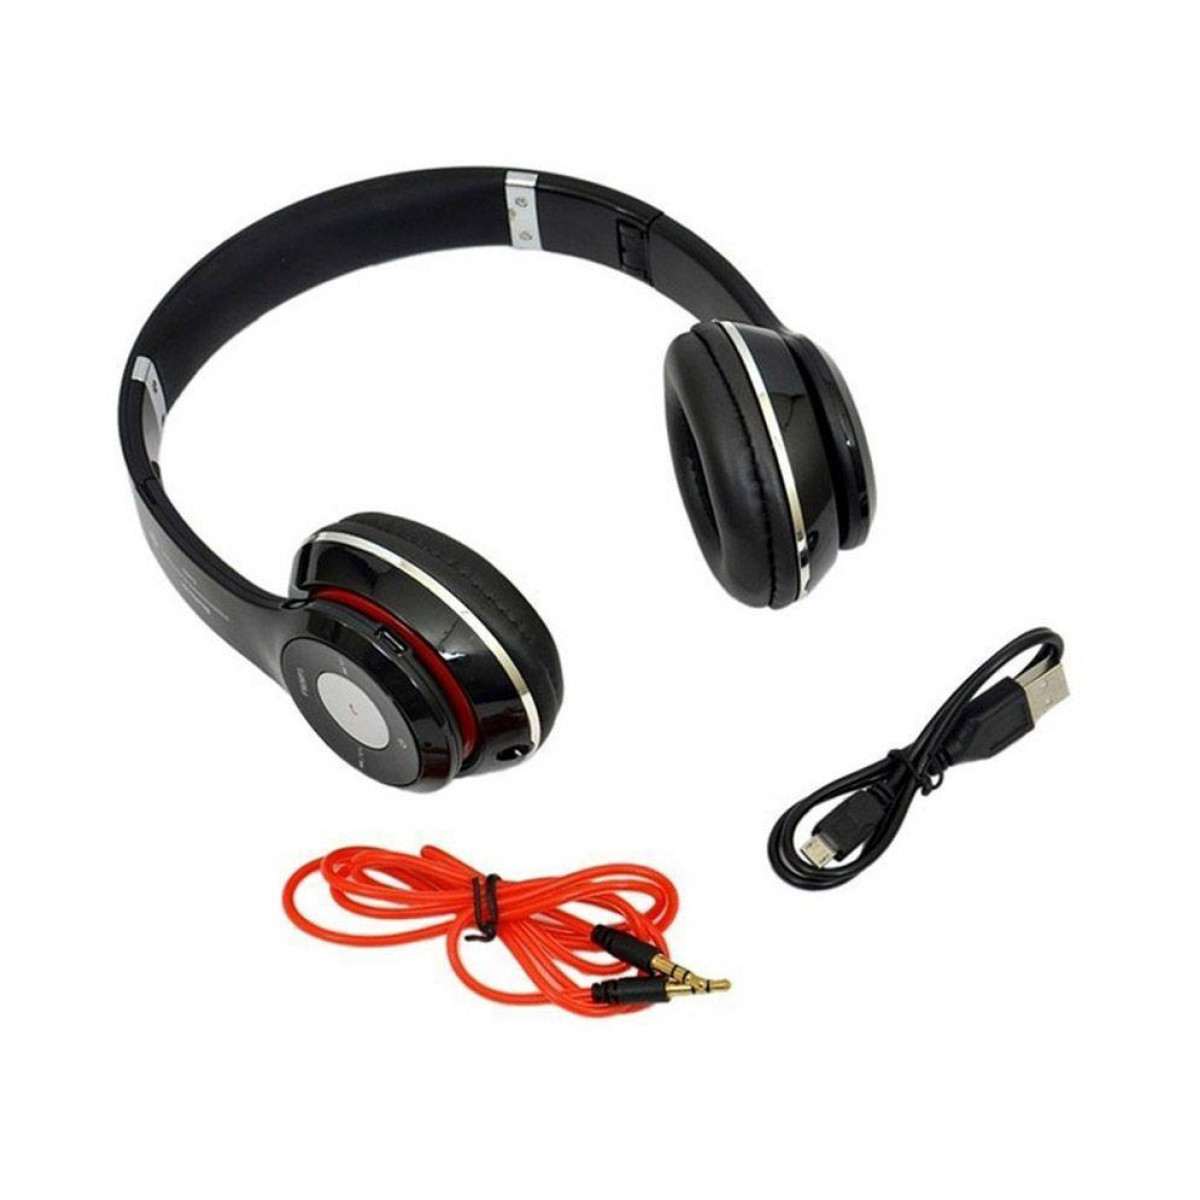 УЦЕНКА! Наушники беспроводные Bluetooth Monster Beats Solo S460 c Мощным Звуком с mp3(Плохая упаковка 742)